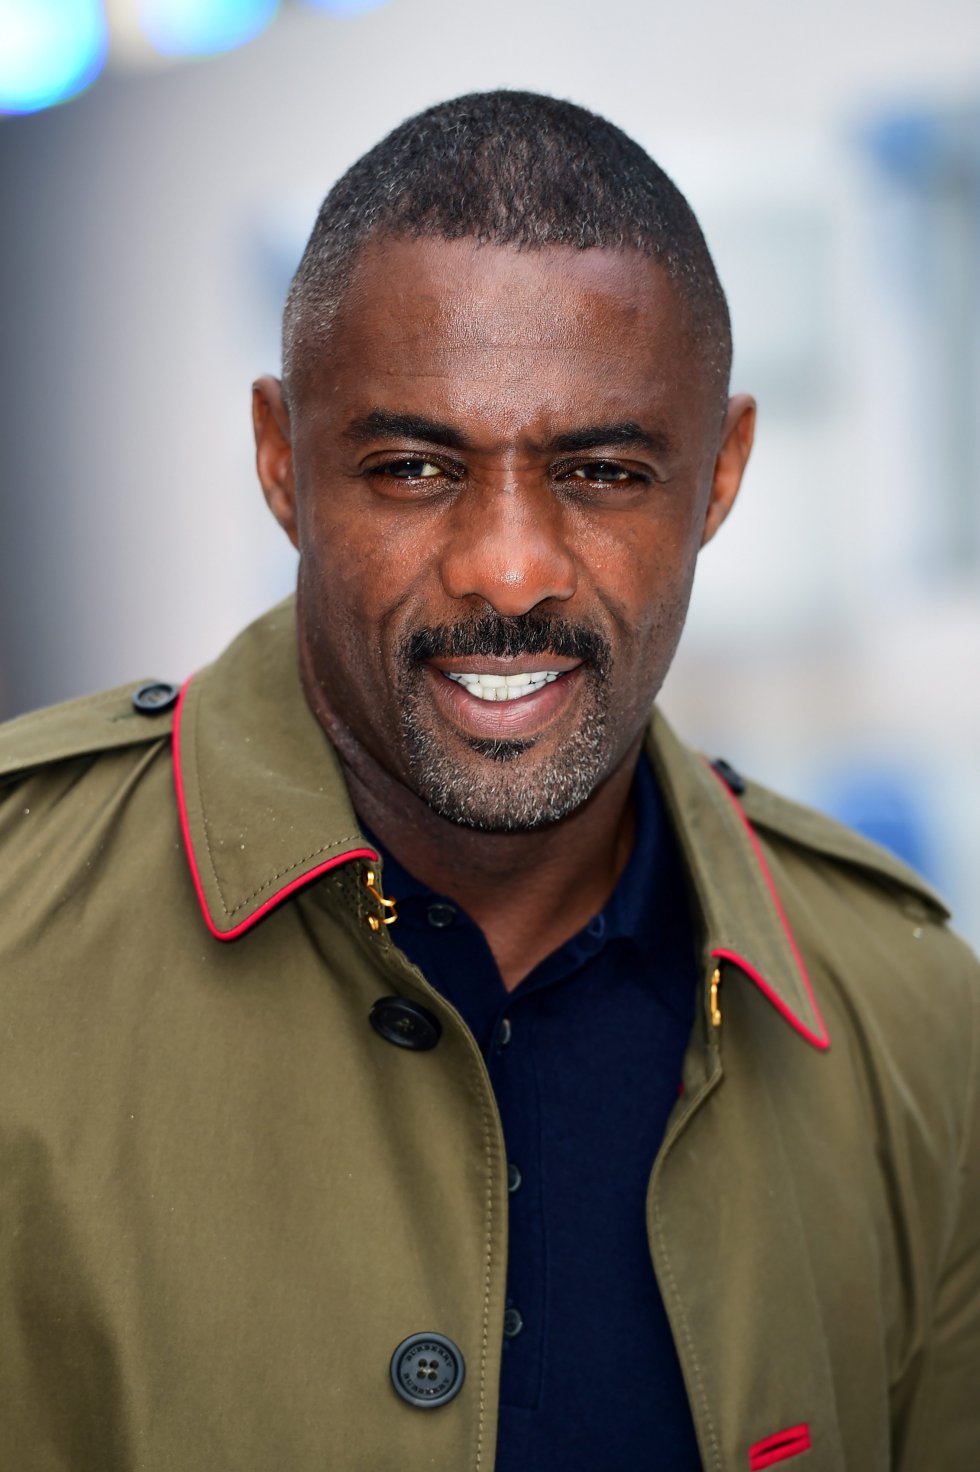 Las medidas del rostro del actor británico Idris Elba coinciden en un 87,93 % con la proporción áurea.